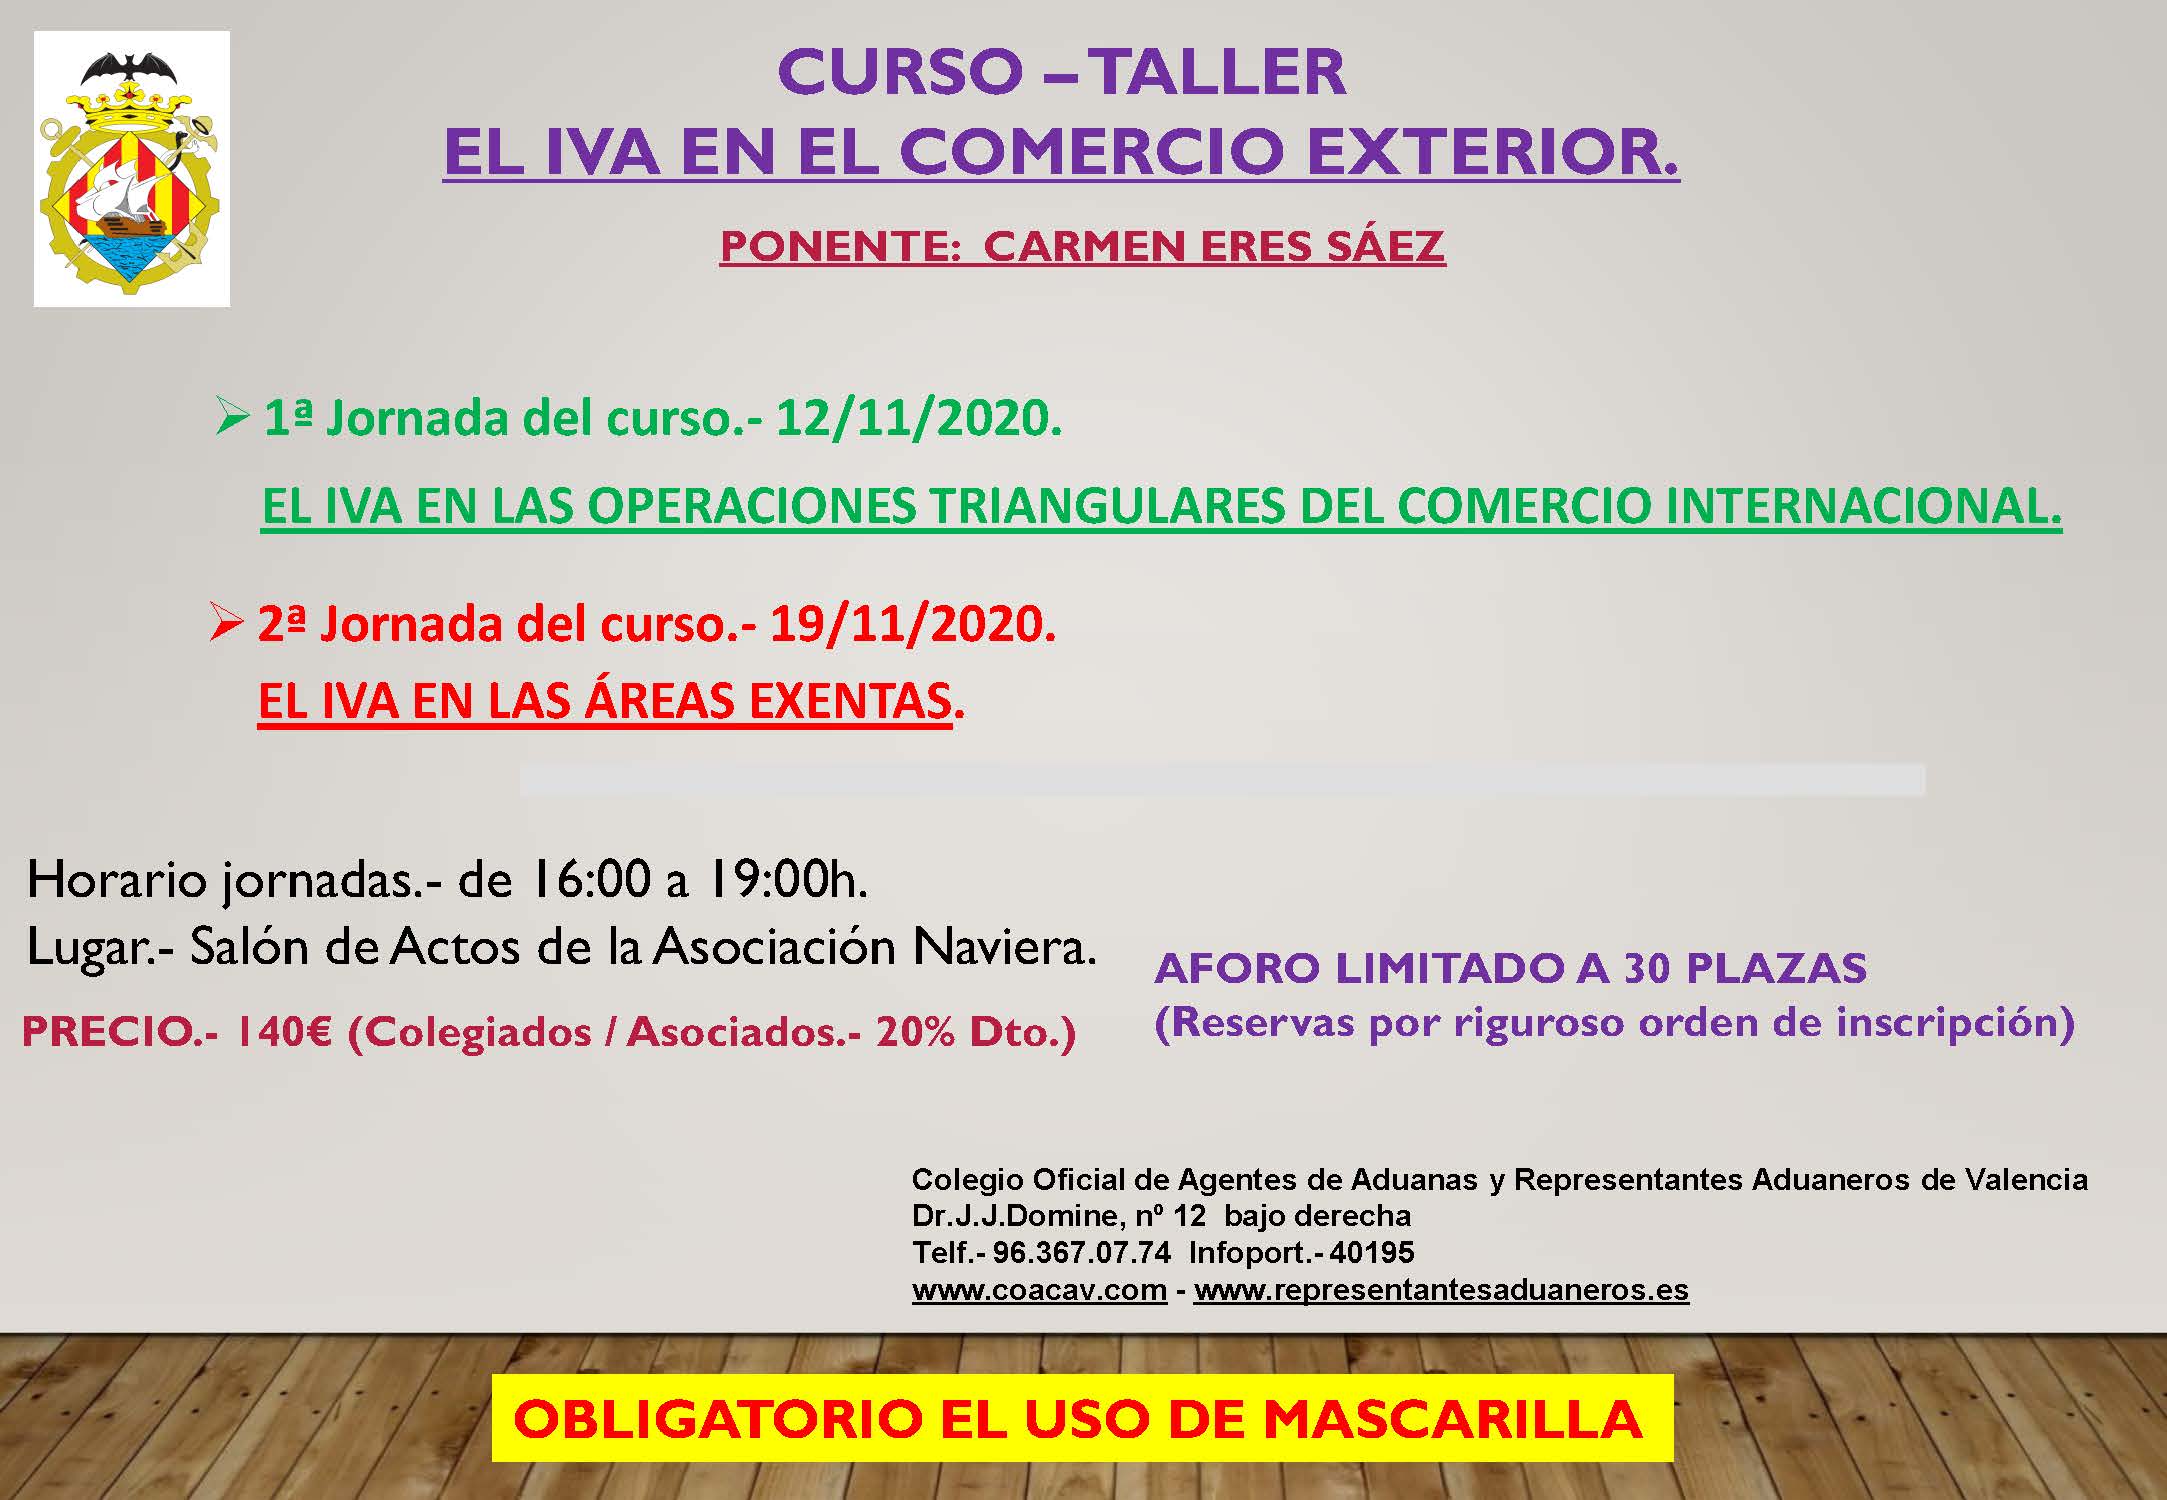 CURSO-TALLER: EL IVA EN EL COMERCIO EXTERIOR